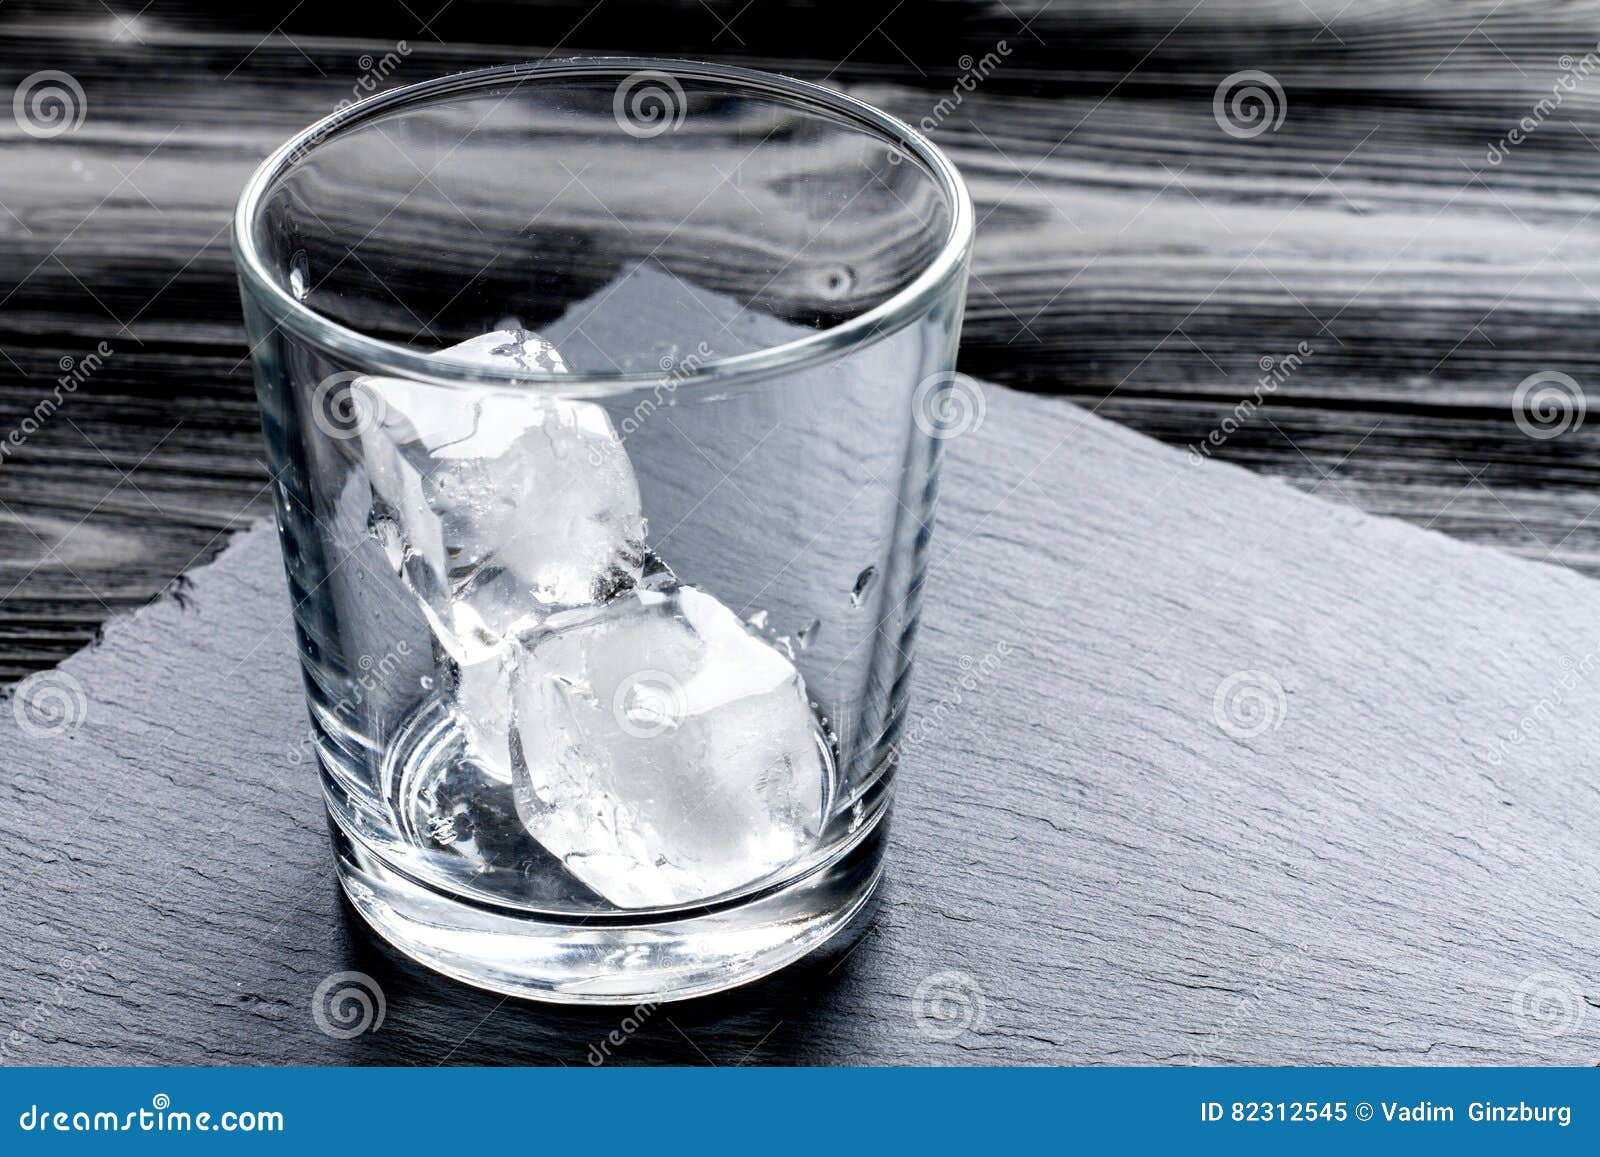 Песню налей пустой стакан. Пустой стакан со льдом. Стеклянный стакан со льдом. Бокал с ледяными трещинами. Лед в стакане разбитом.